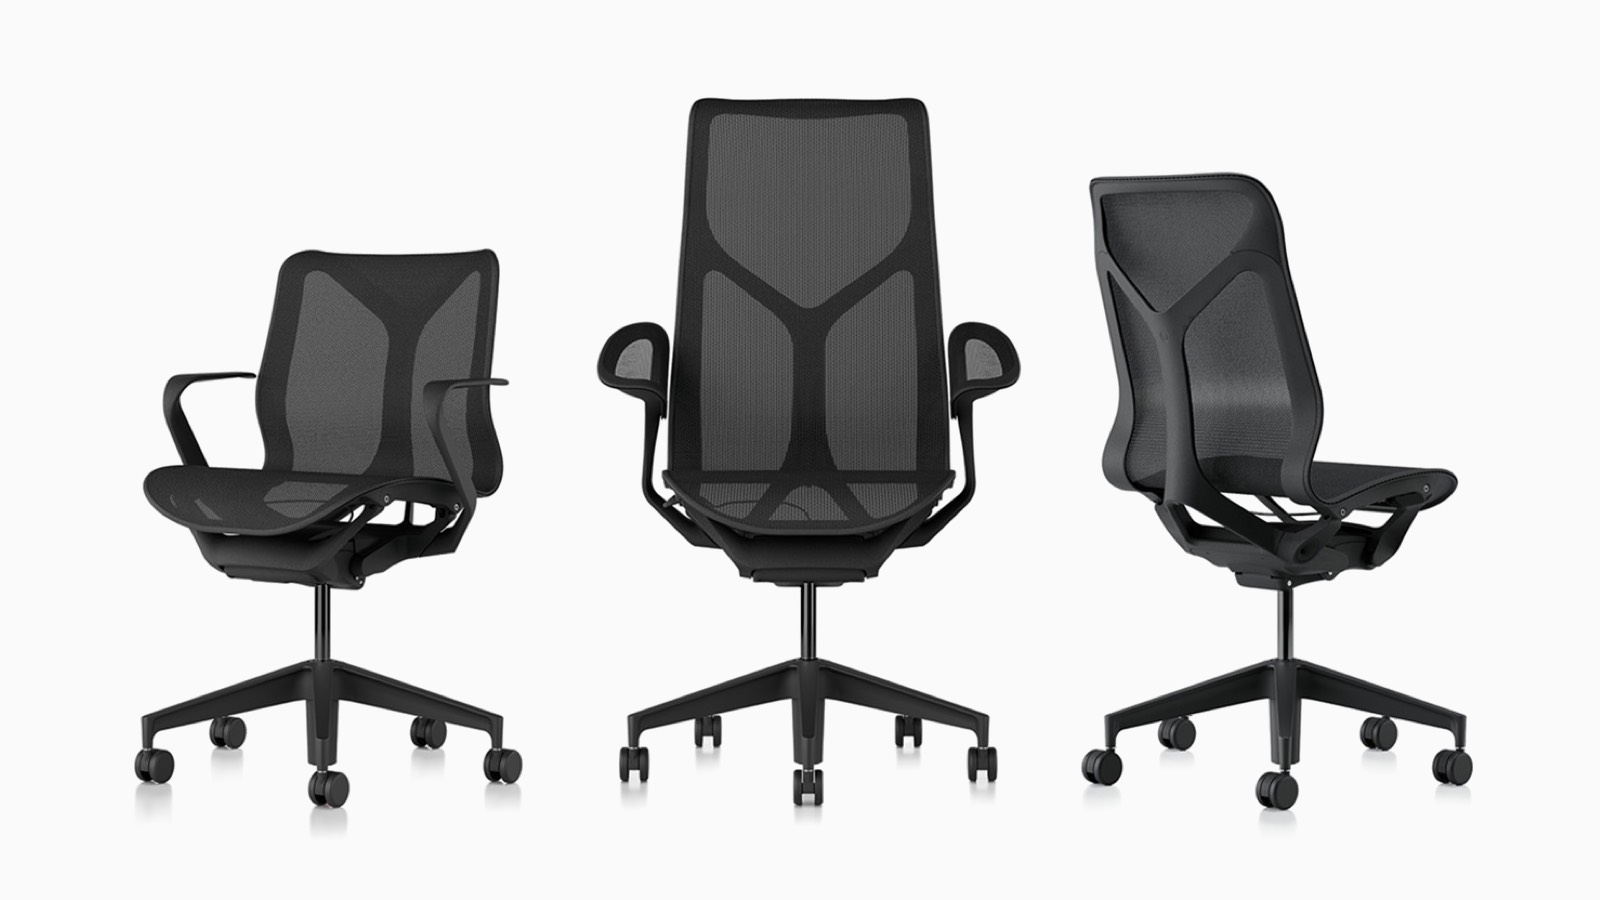 Cosm ergonomische Bürostühle mit niedriger Rückenlehne, hoher Rückenlehne und mittlerer Rückenlehne, mit Federmaterialien, Untergestellen und Rahmen in Graphite dunkelgrau.